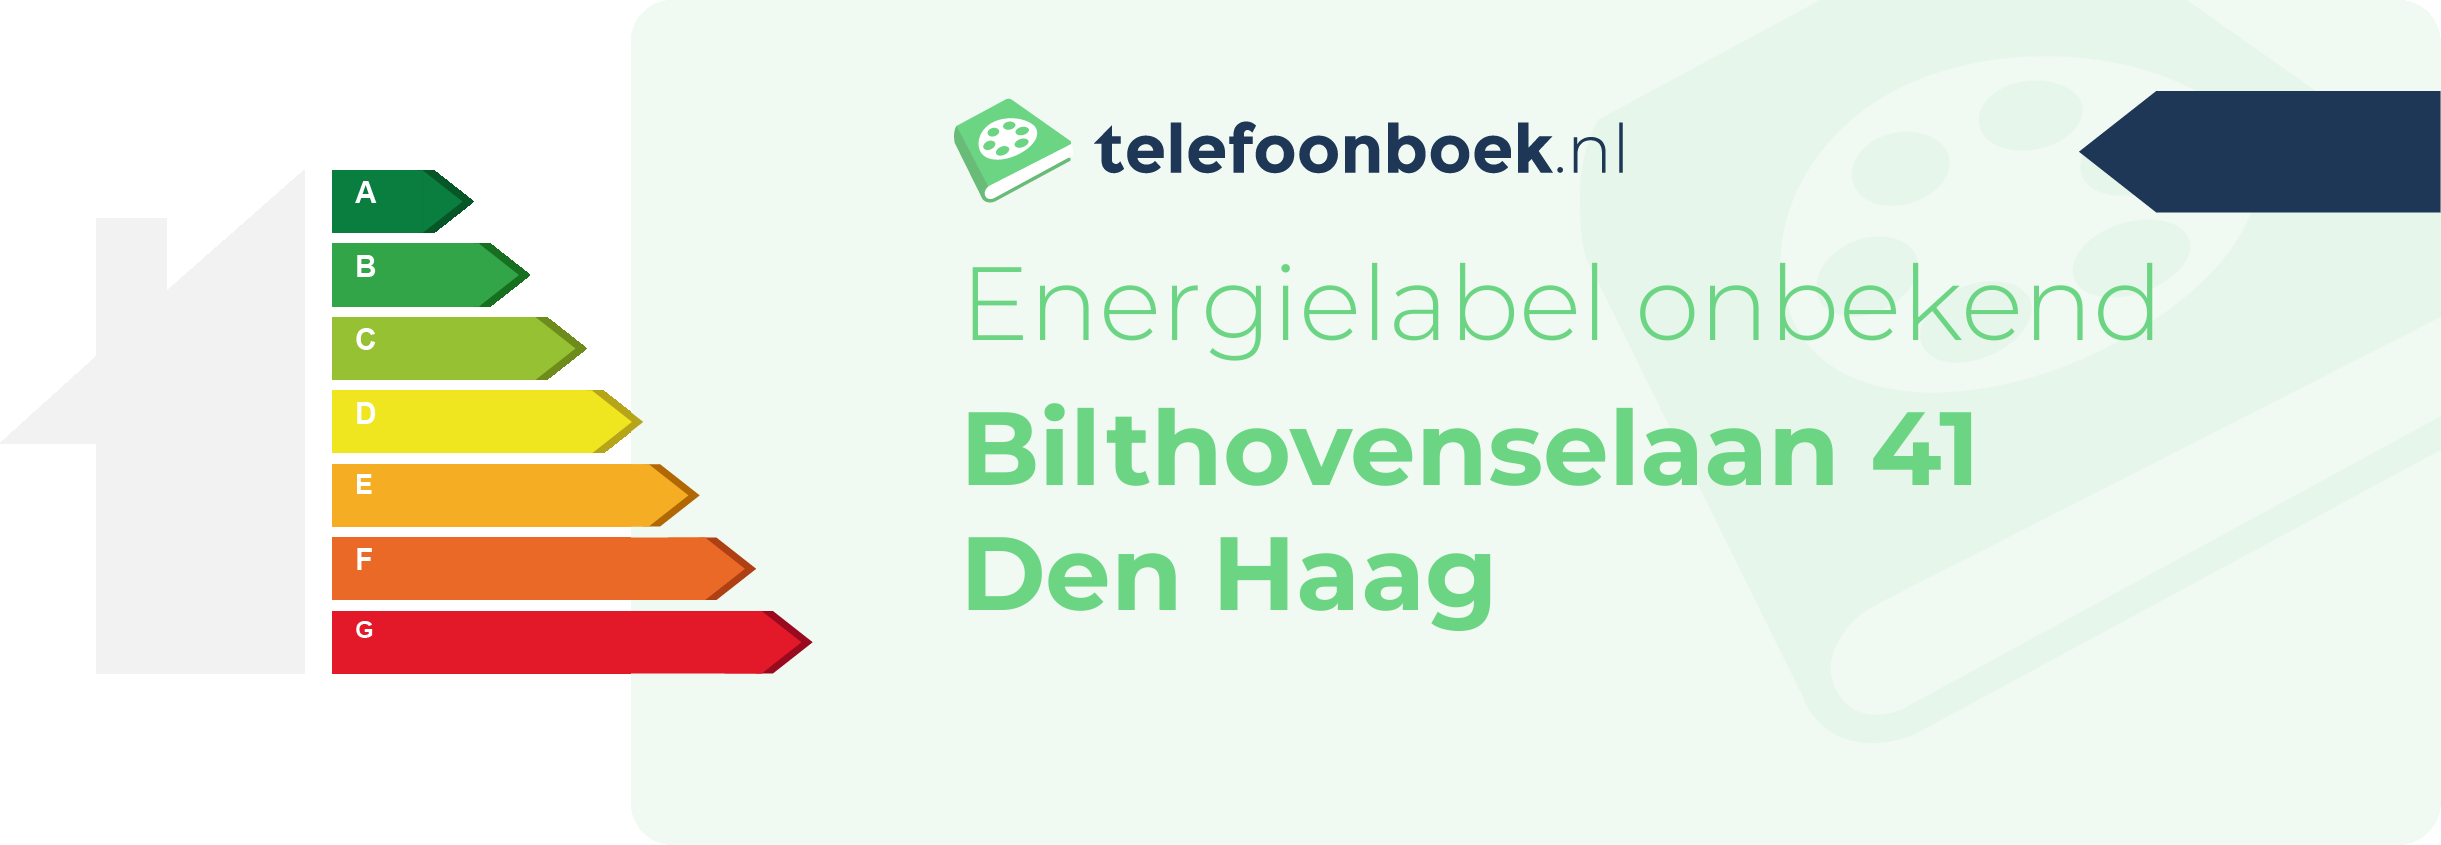 Energielabel Bilthovenselaan 41 Den Haag